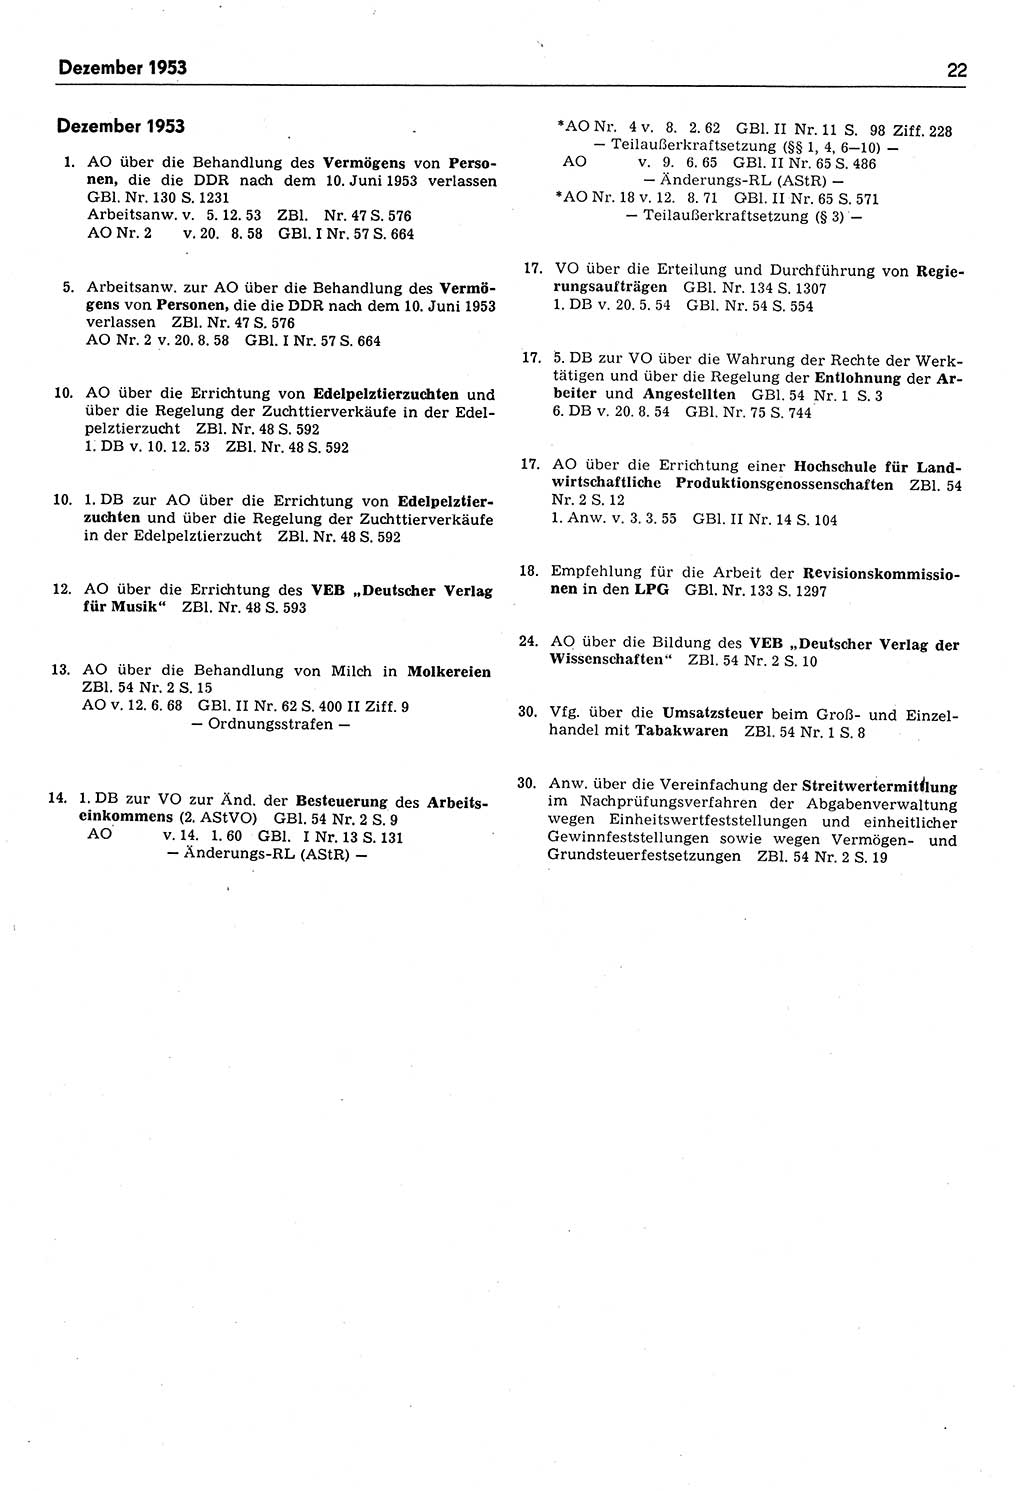 Das geltende Recht der Deutschen Demokratischen Republik (DDR) 1949-1988, Seite 22 (Gelt. R. DDR 1949-1988, S. 22)